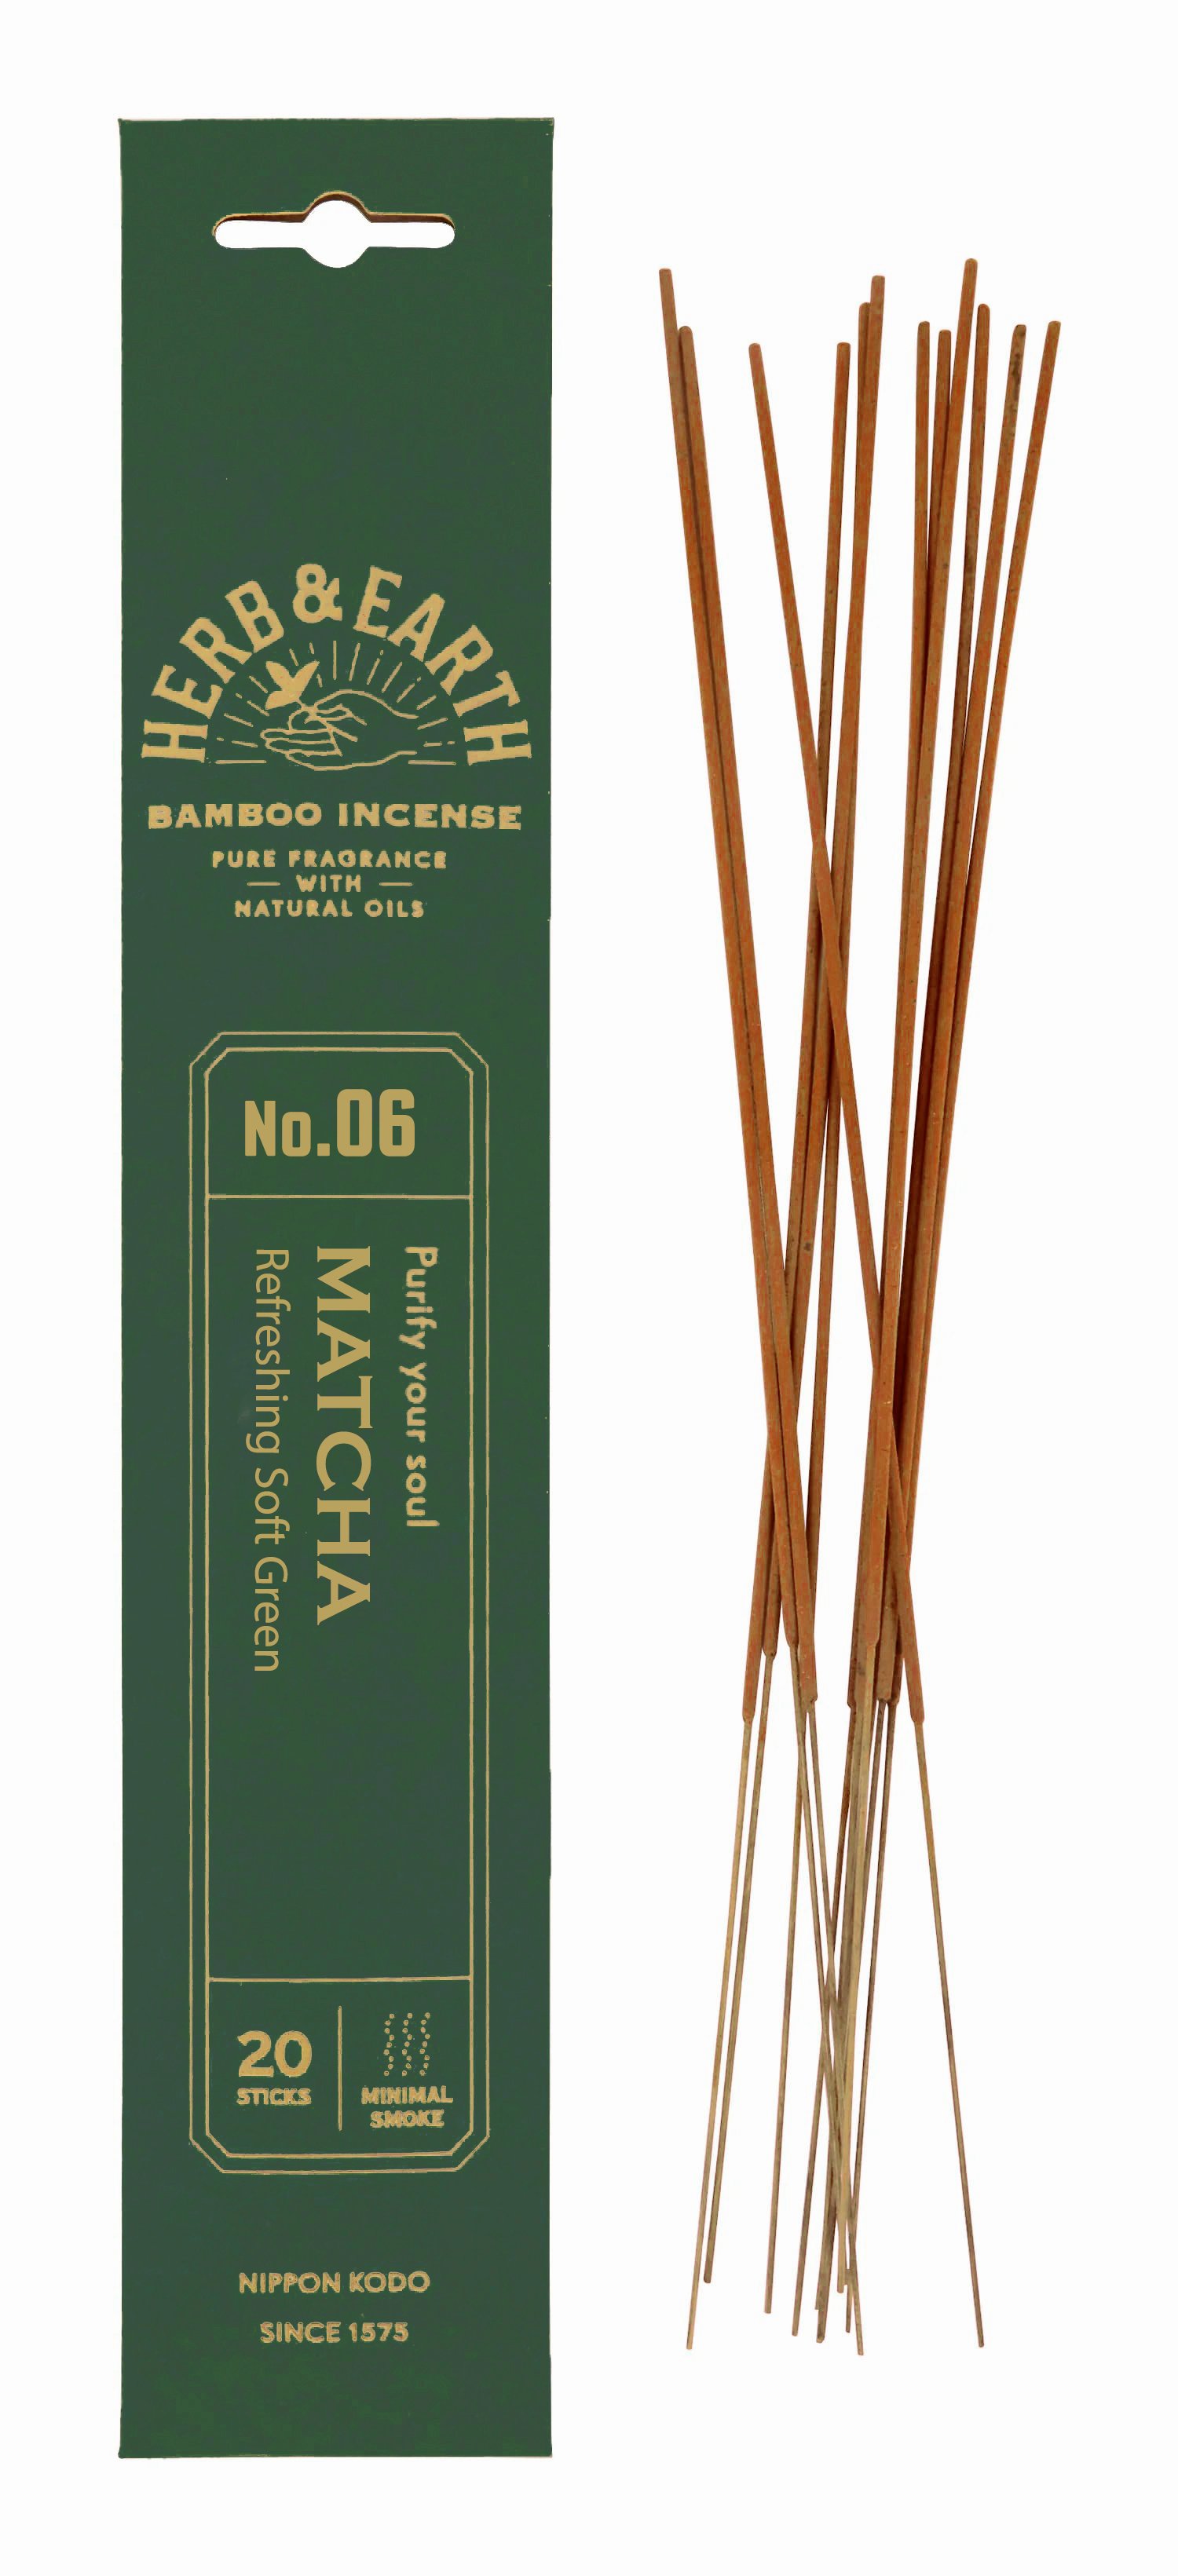 Благовоние на бамбуковой основе HERB & EARTH Матча, 20 палочек по 18 см. 